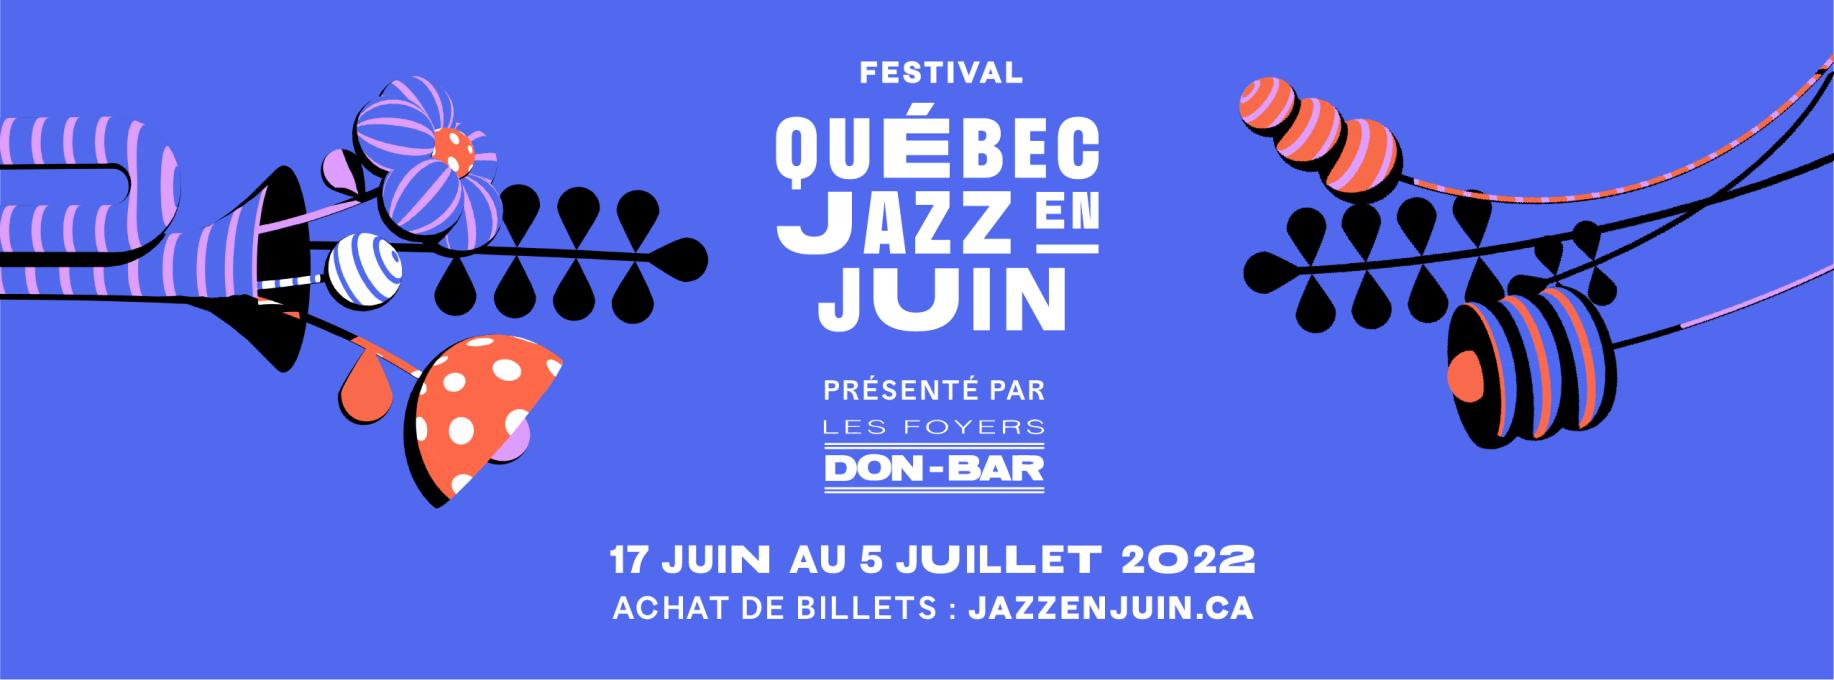 Festival Québec Jazz en Juin - 2022